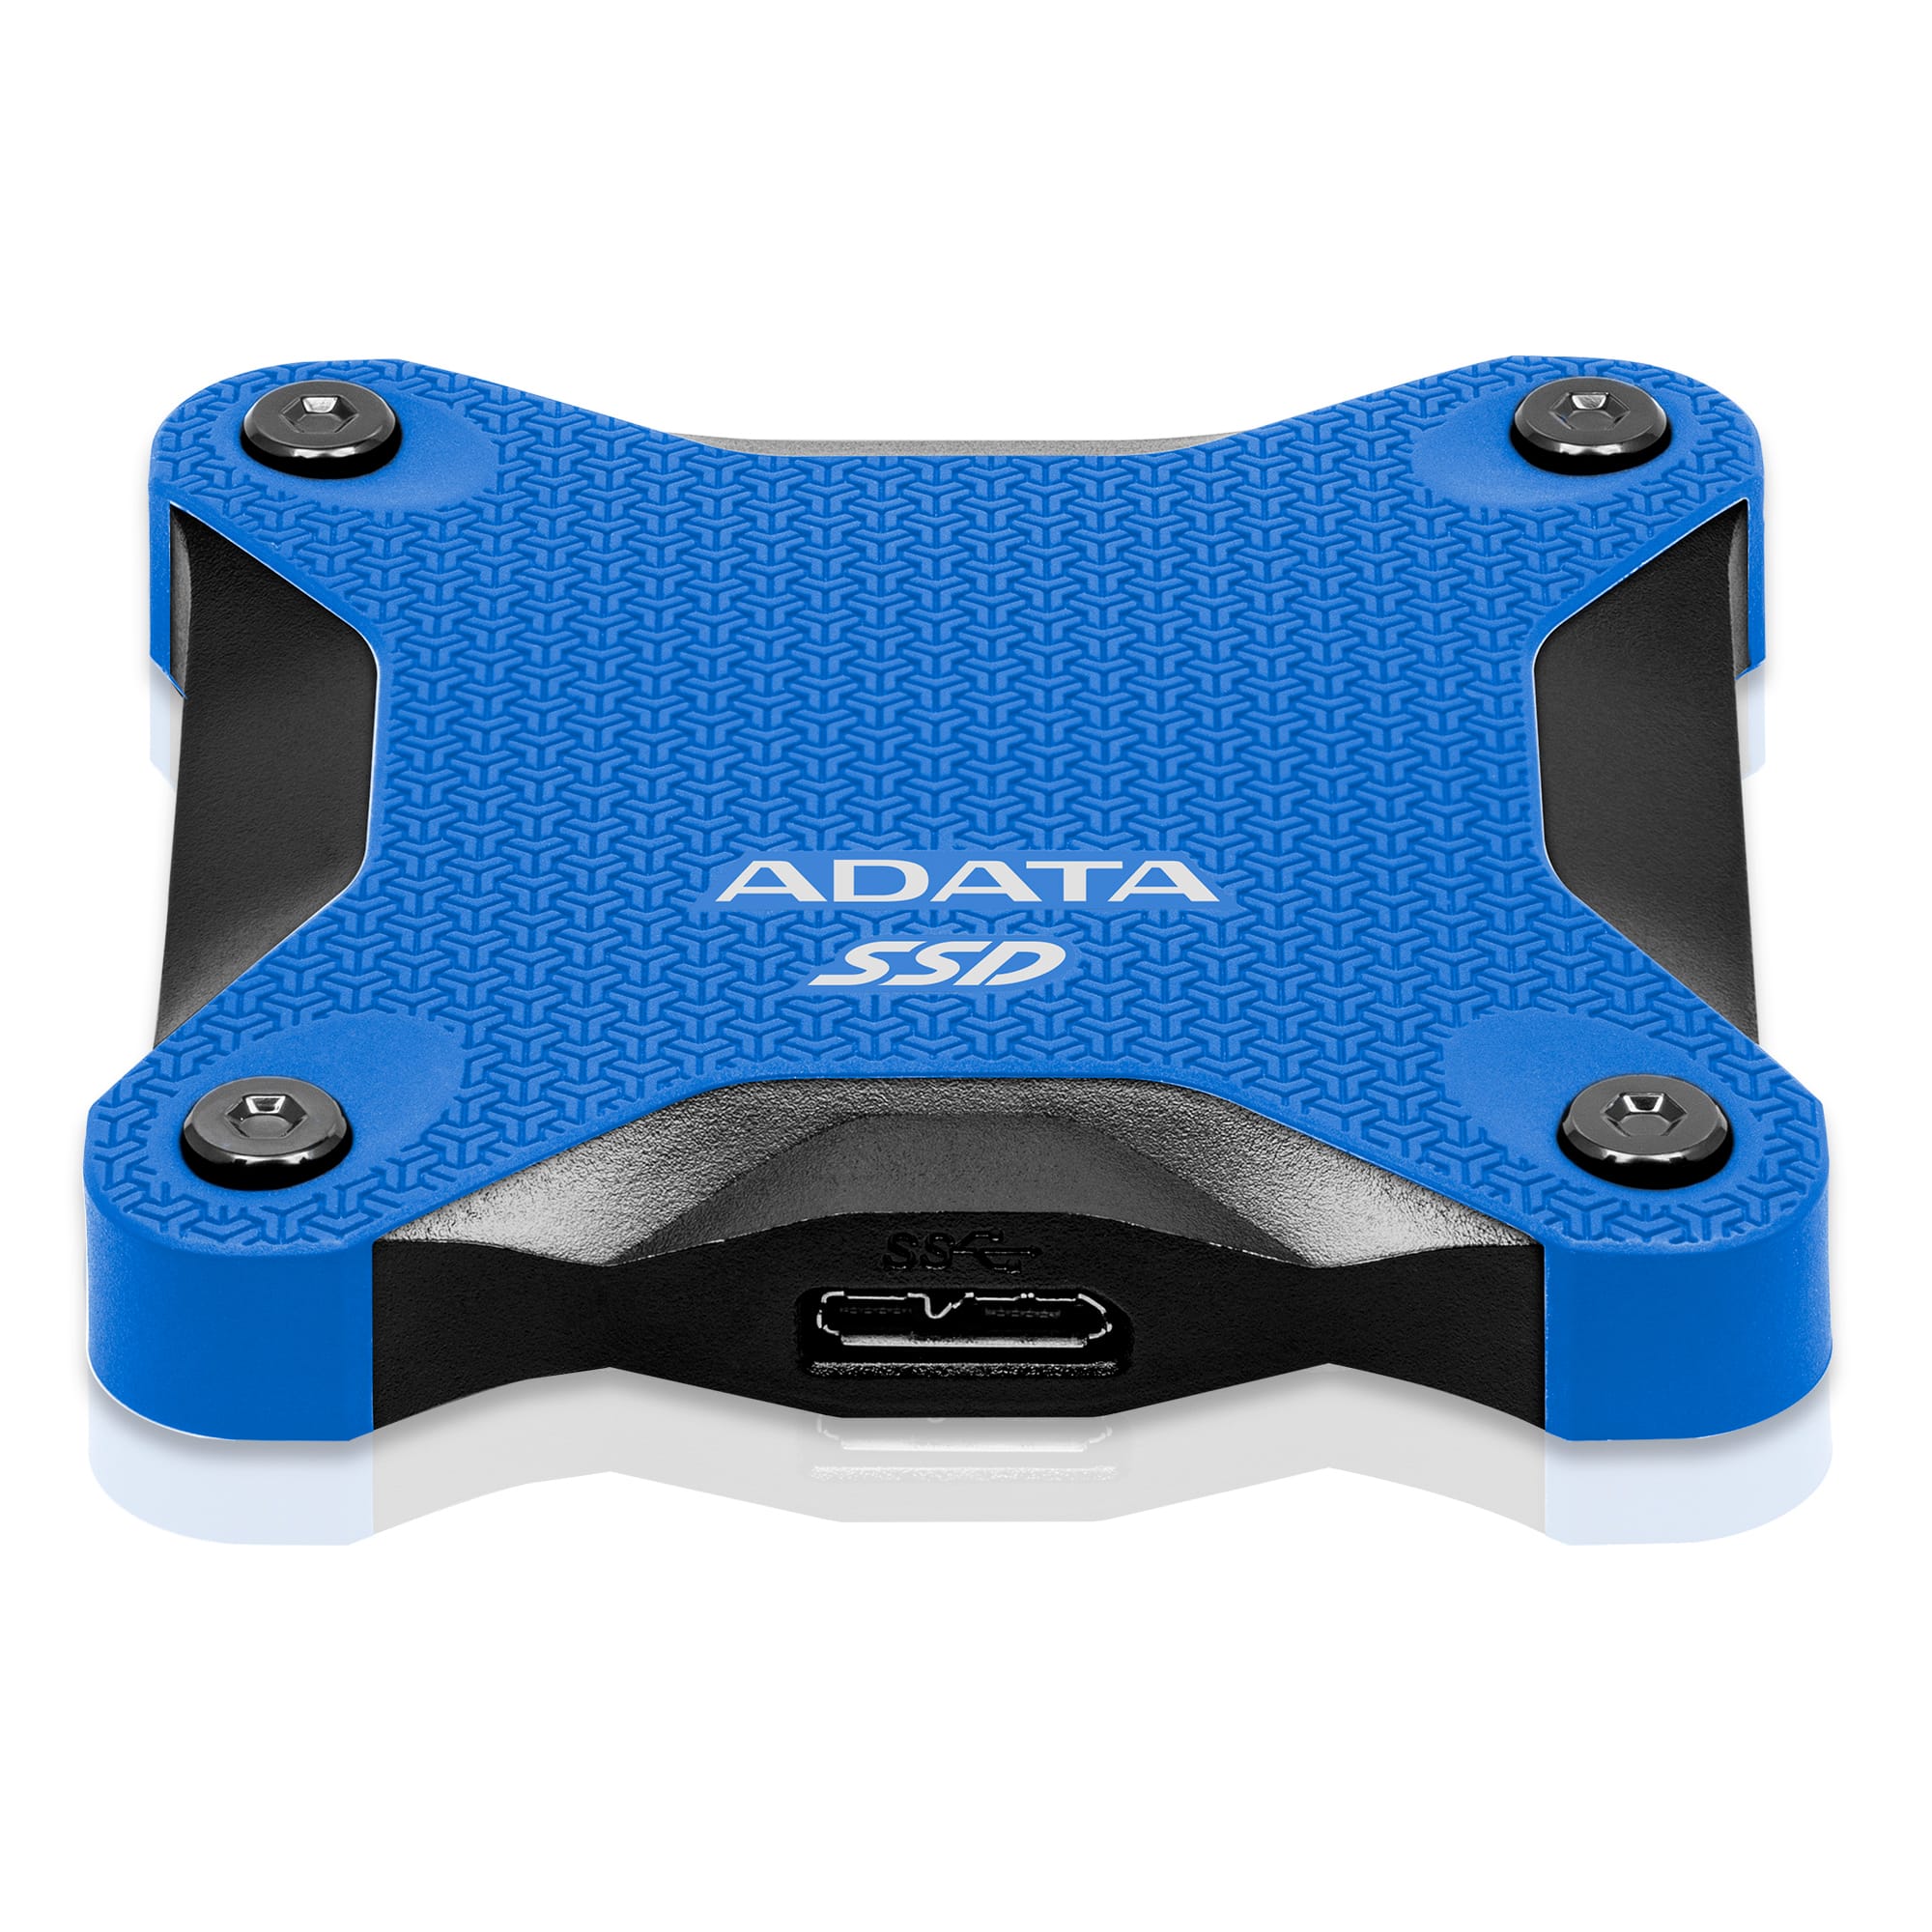 ADATA SSD SD600Q, 960GB, USB 3.2 - rýchlosť 440/430 MB/s (ASD600Q-960GU31-CBK) externý pevný disk, čierna